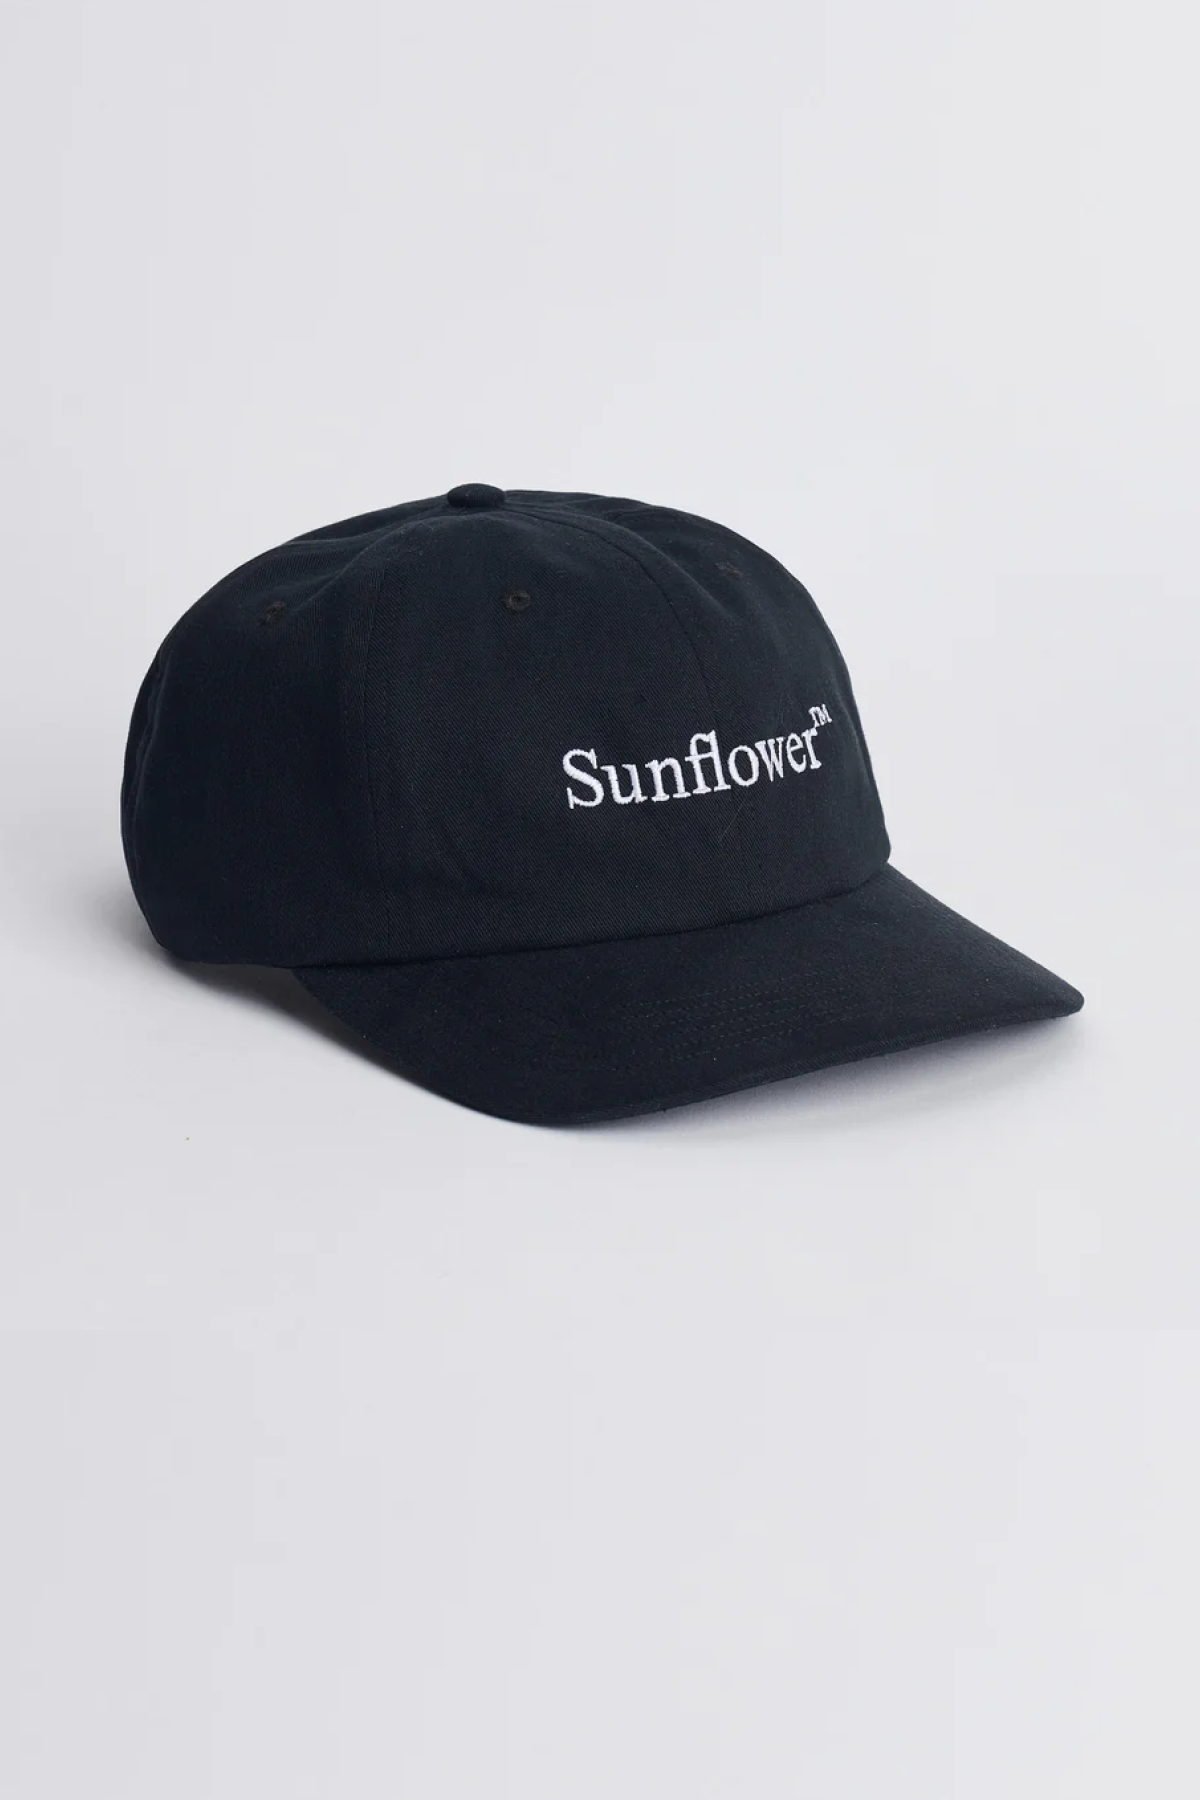 Sunflower Dad Cap - Black